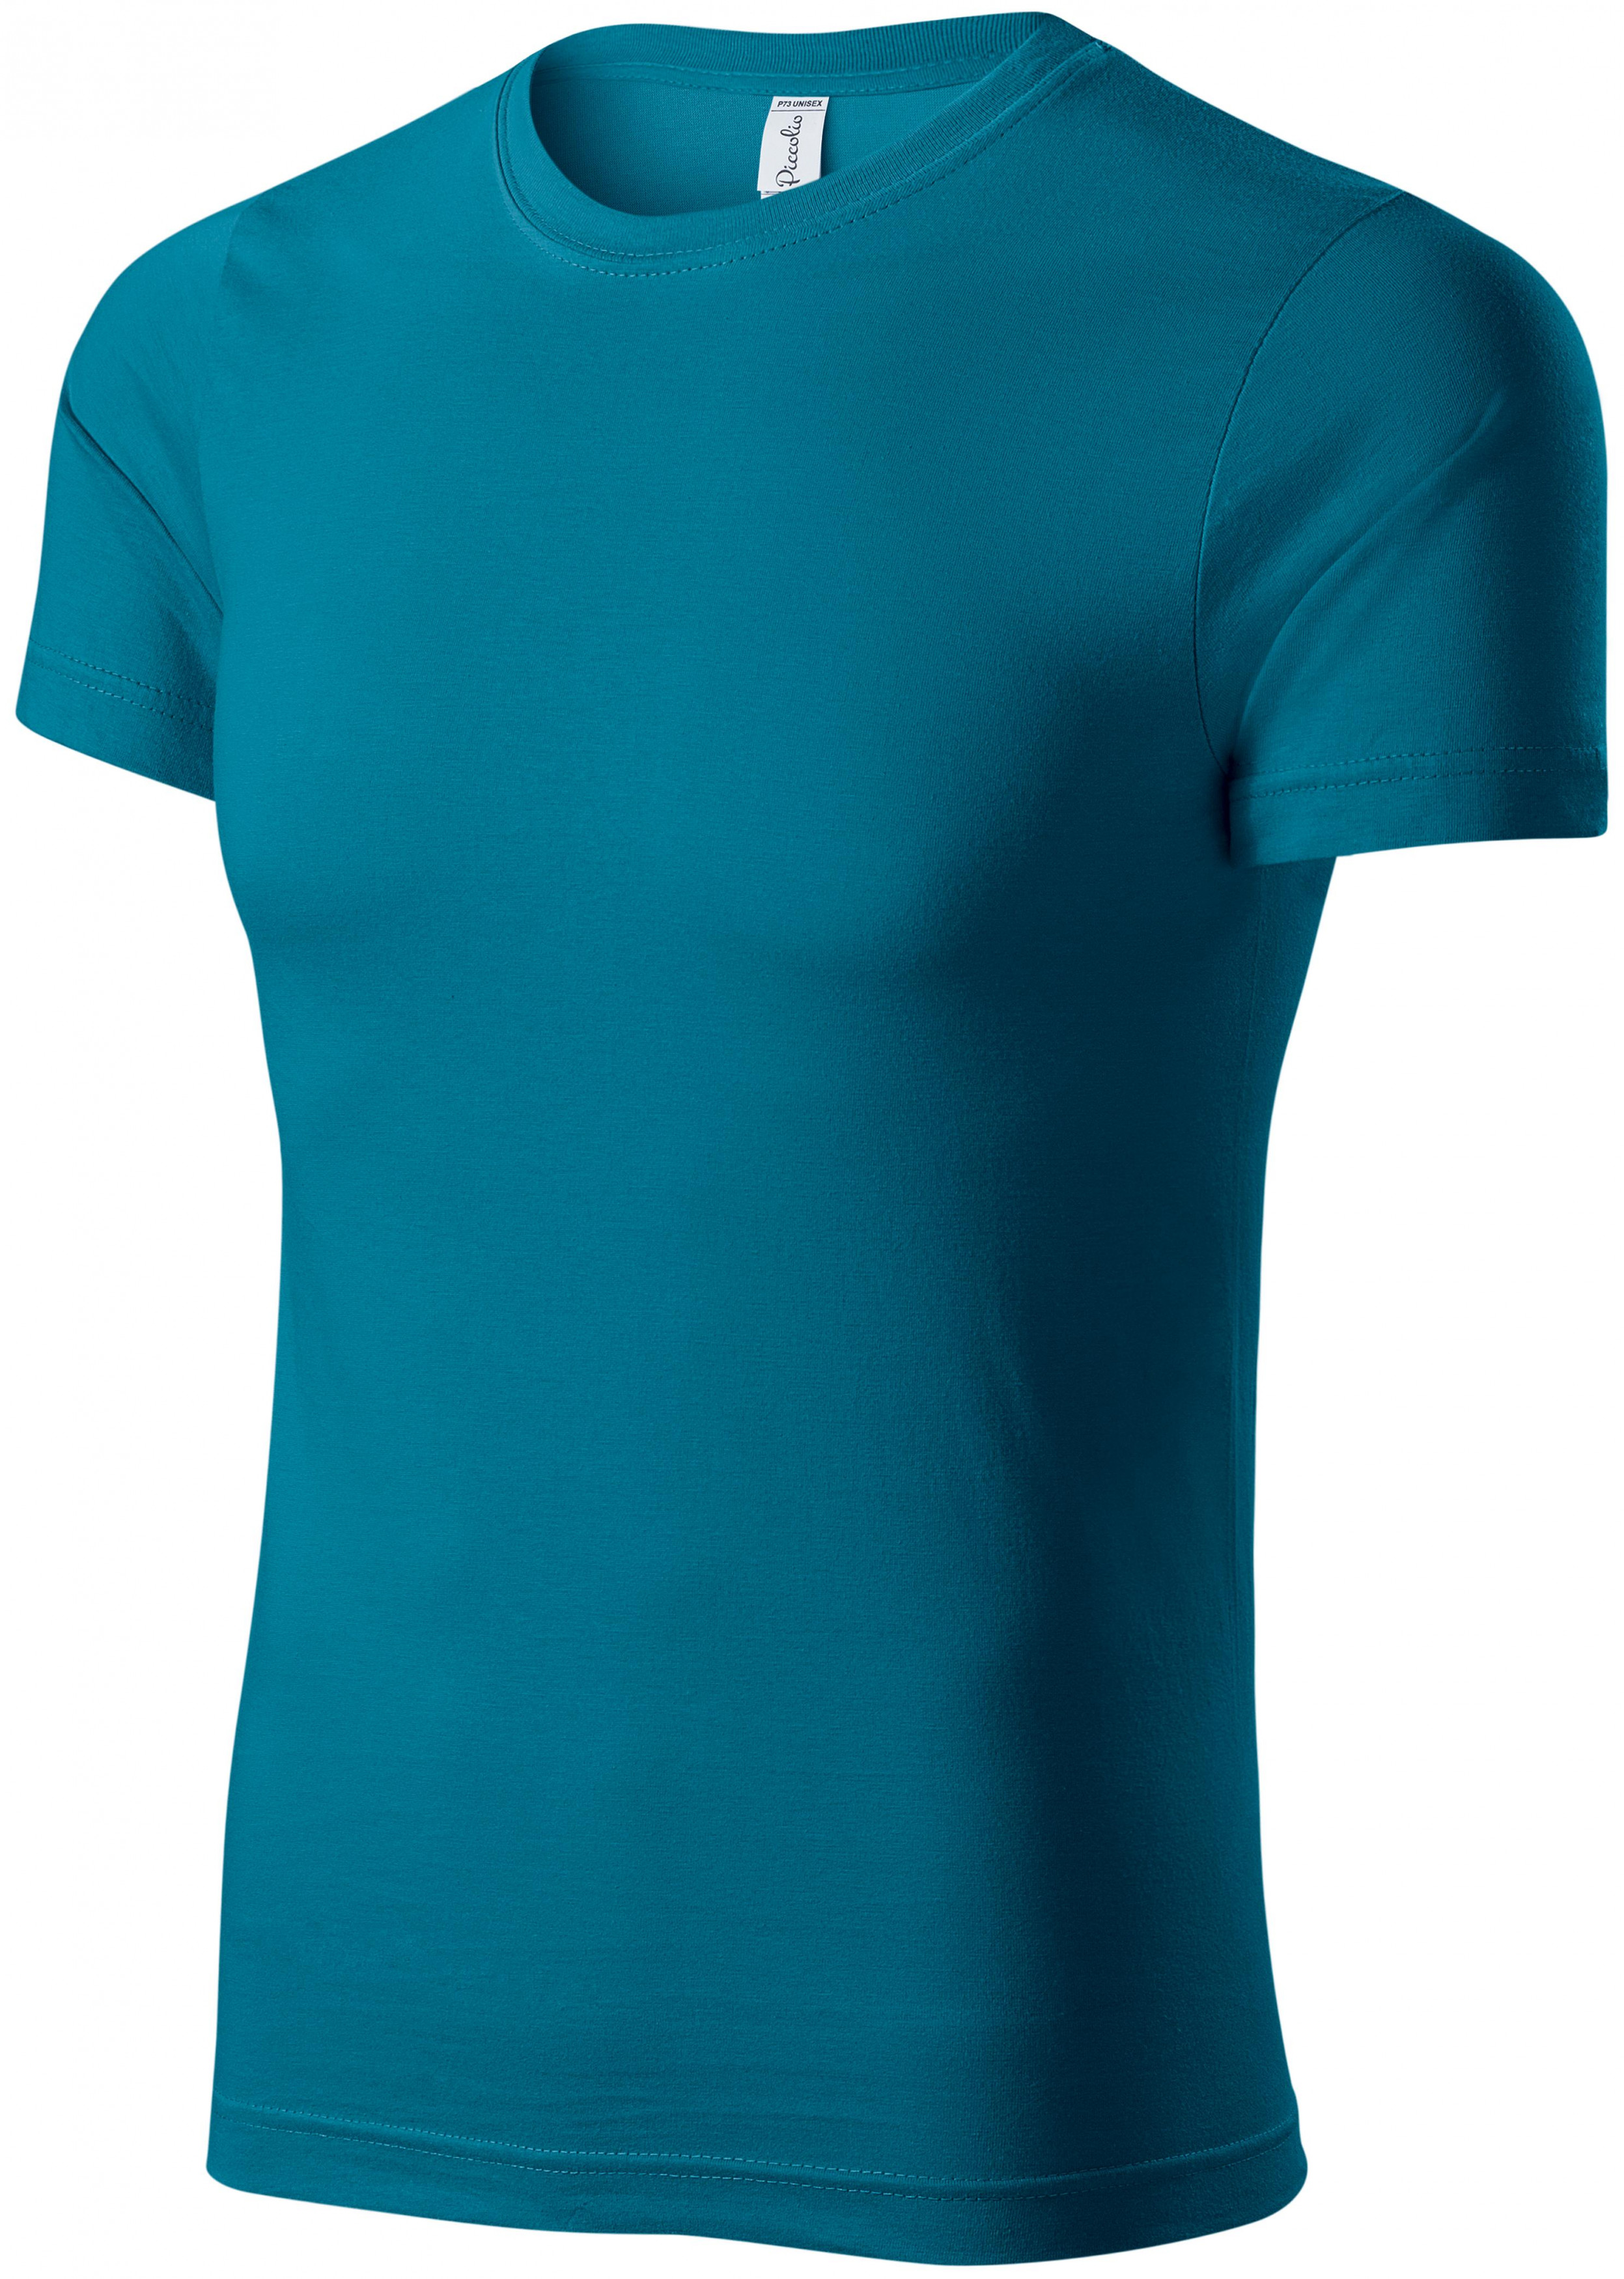 Tričko ľahké s krátkym rukávom, petrol blue, XL